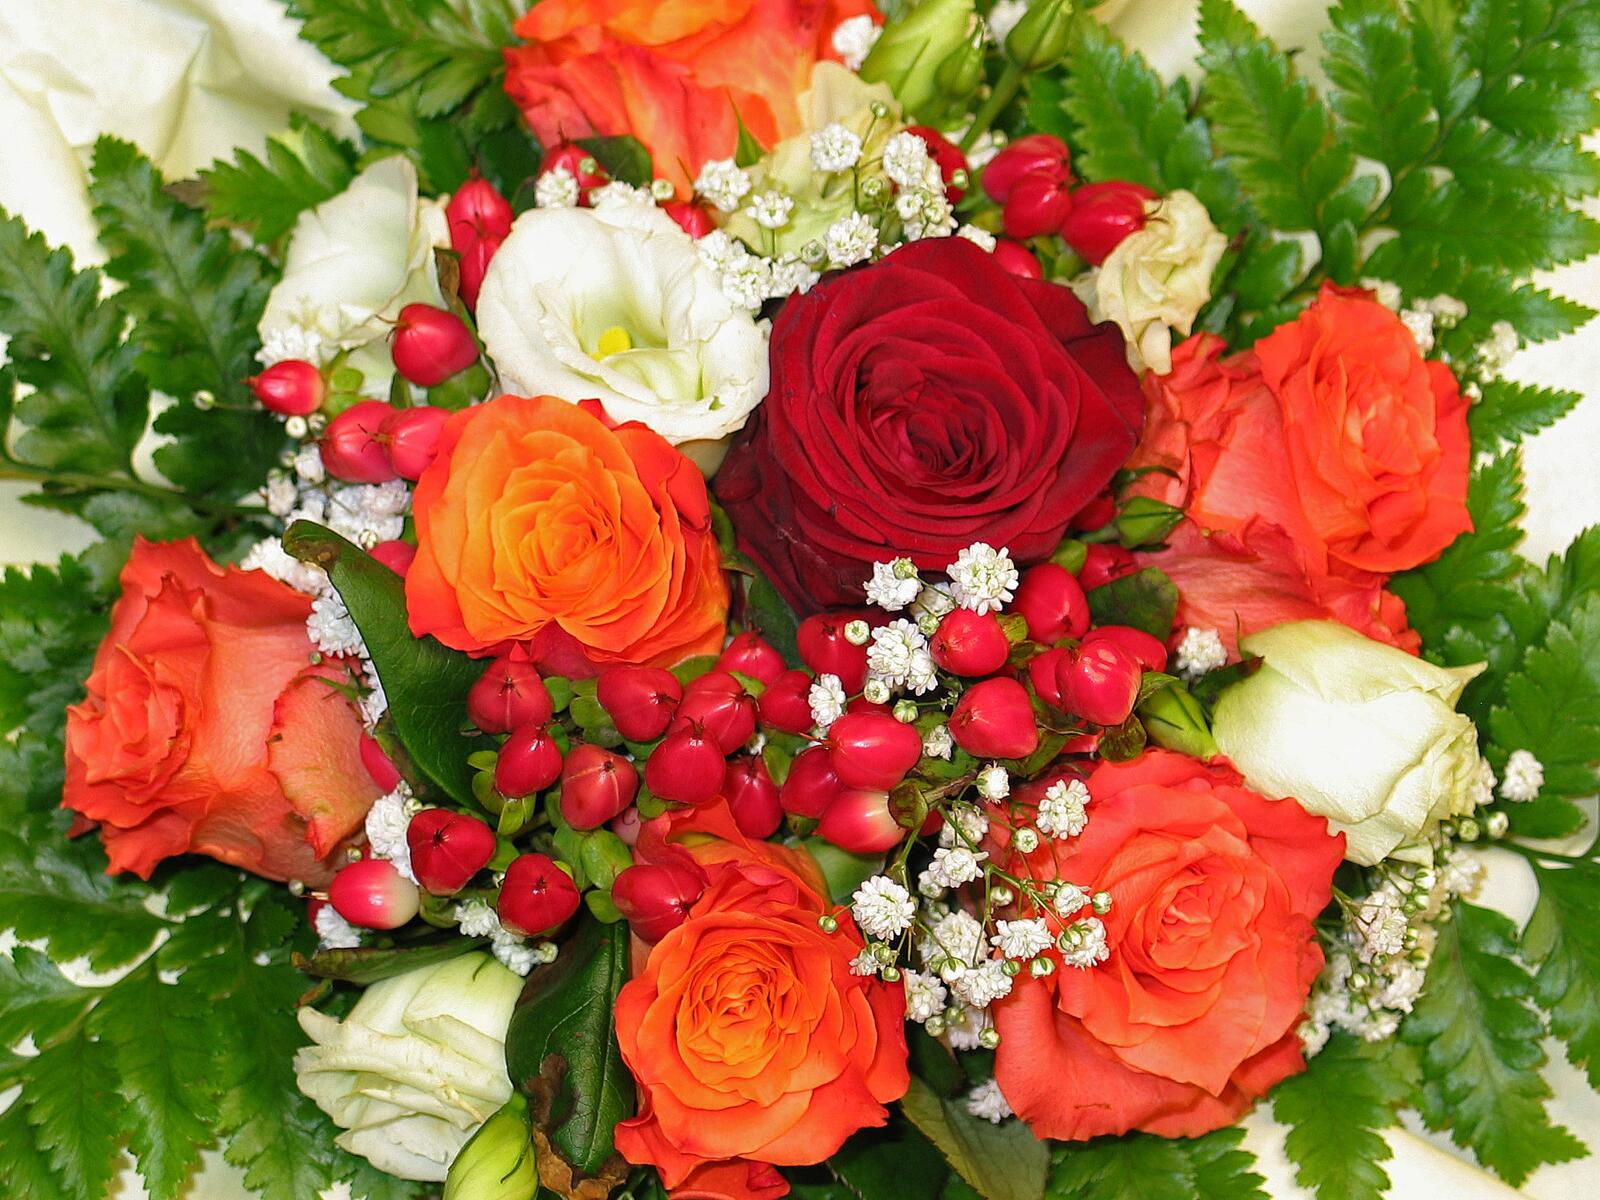 Обои цветы флора красочные на рабочий стол